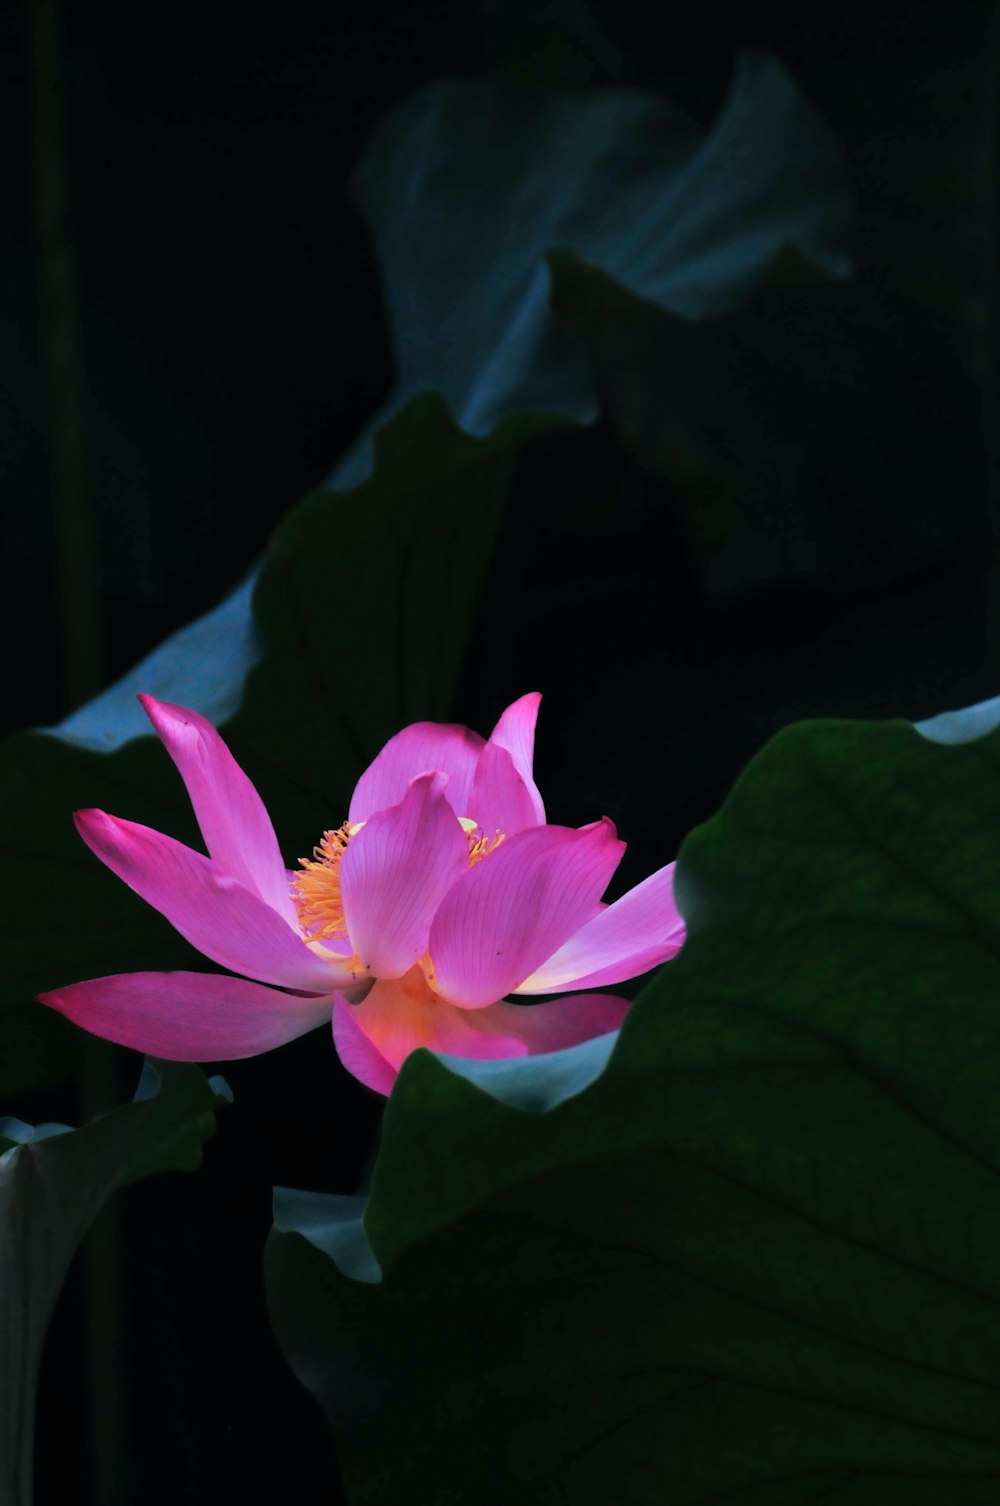 fiore di loto rosa